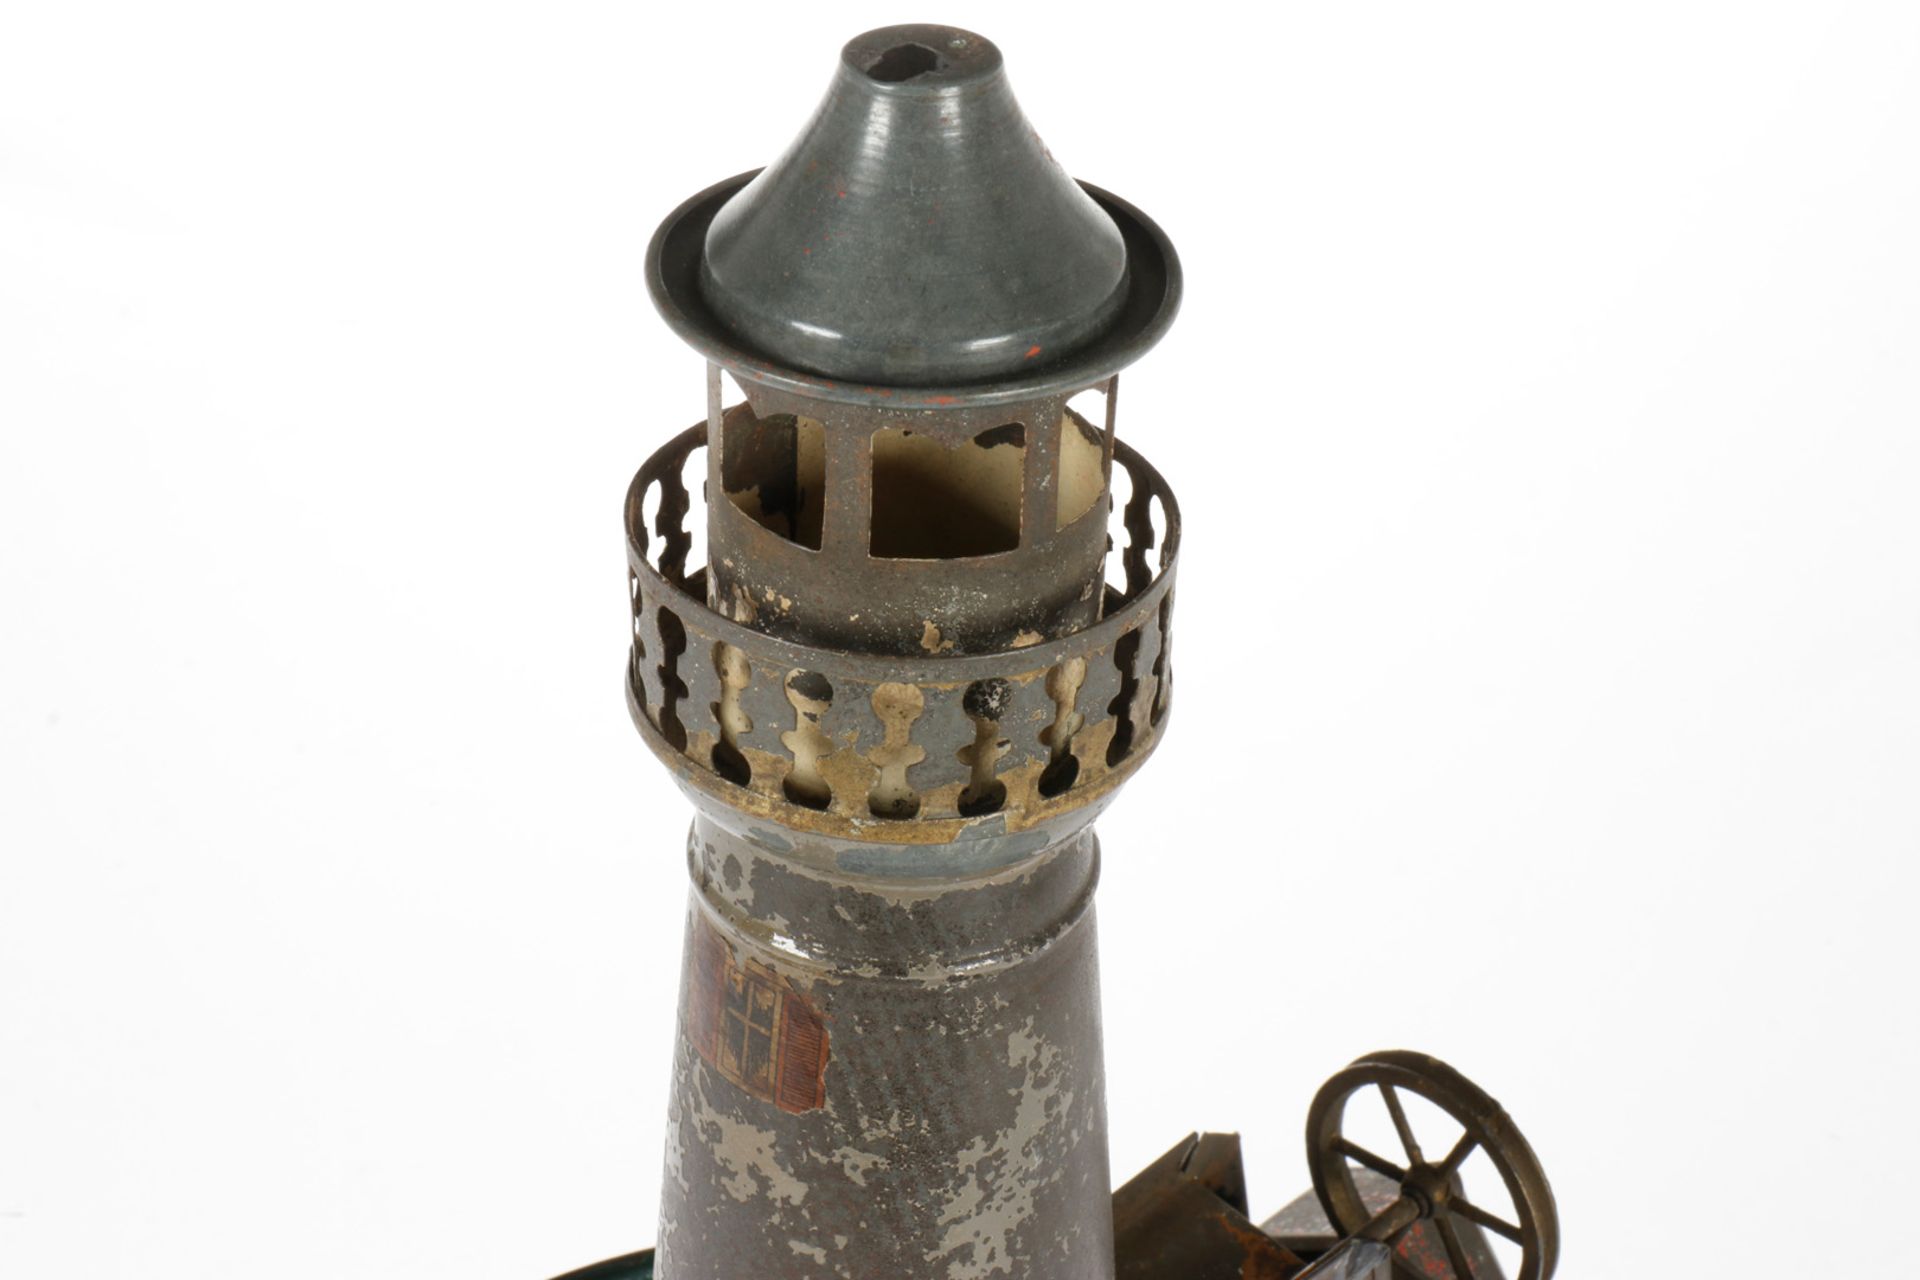 Antriebsmodell Leuchtturm mit Segelschiff, uralt, HL, tw starker Lackverlust, H 33, sonst Z 2-3, - Bild 5 aus 5